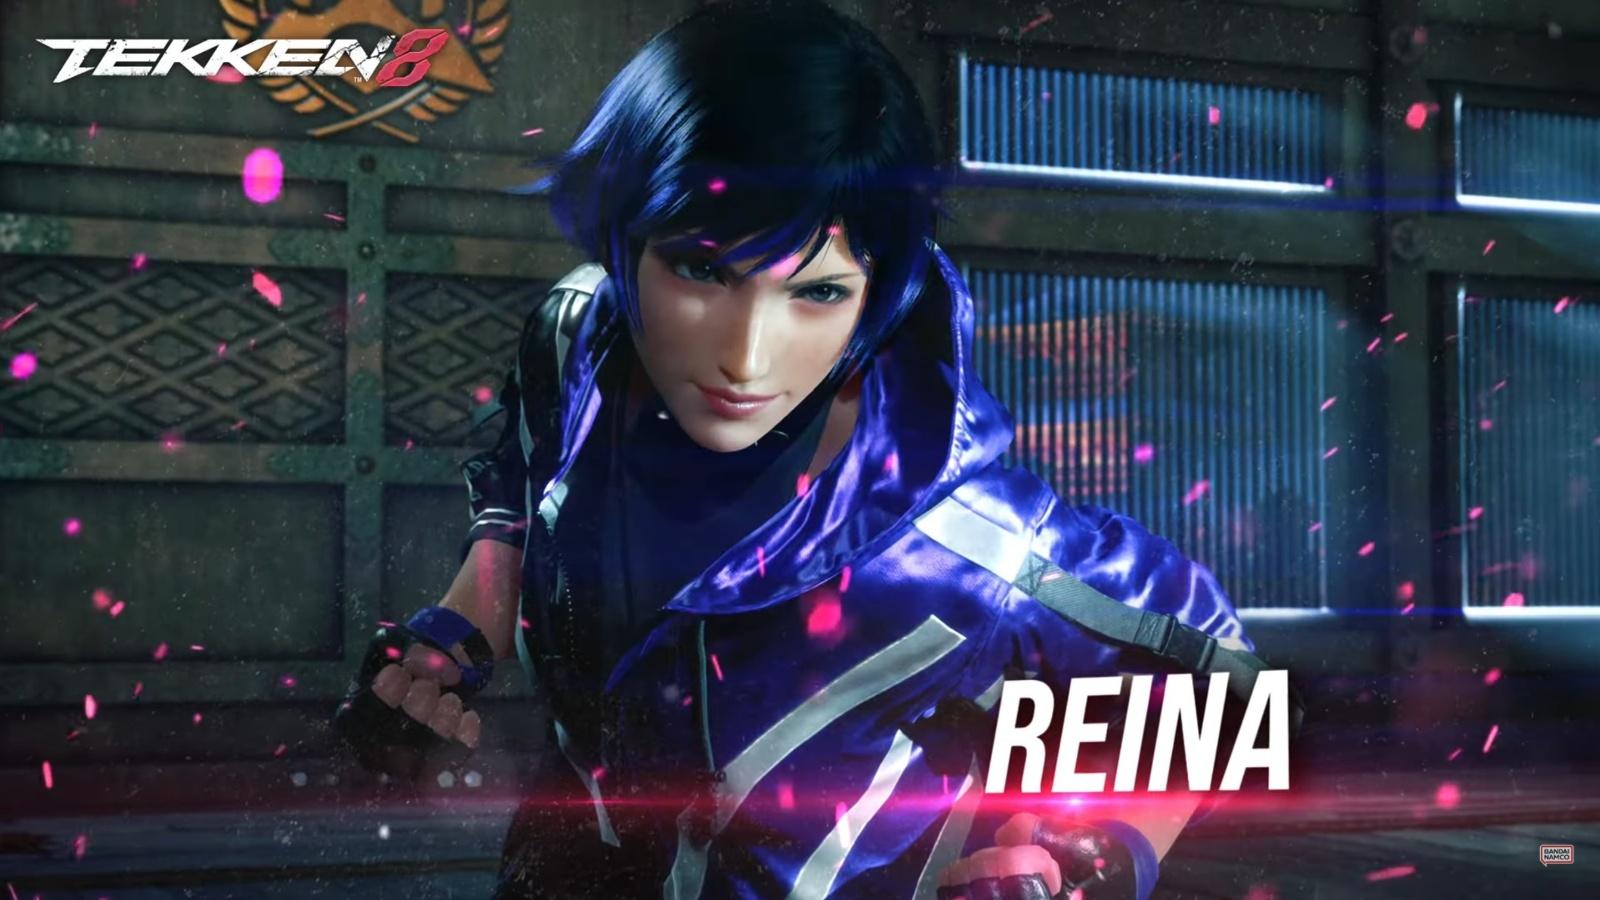 A screenshot of Reina from Tekken 8